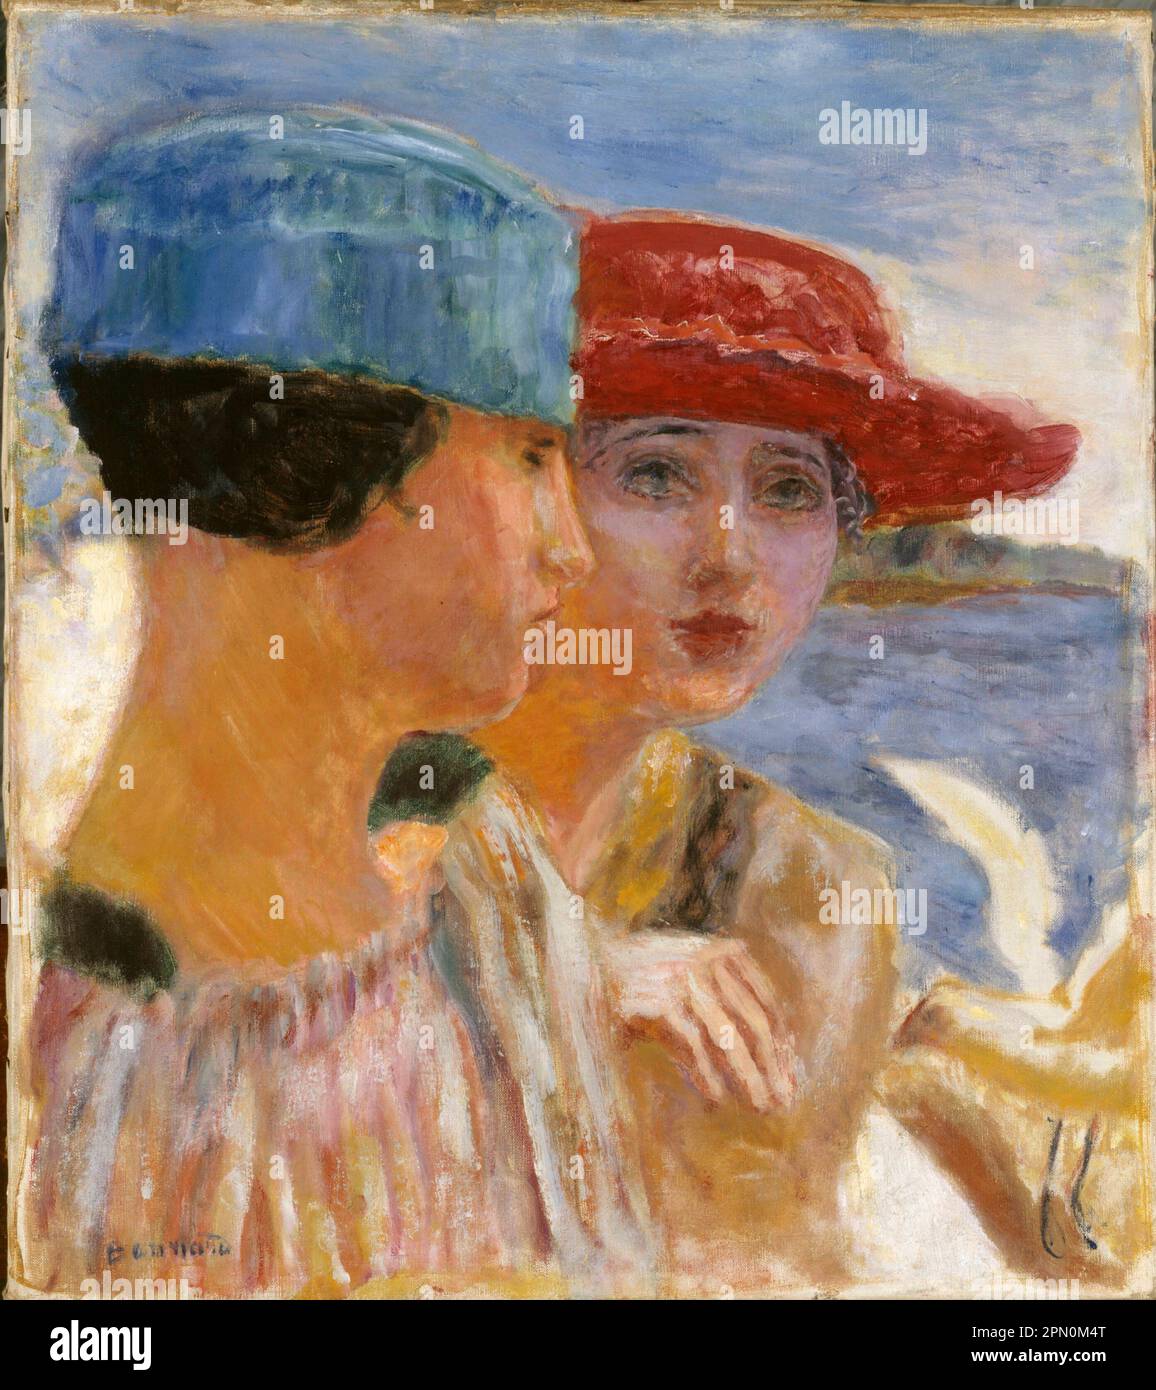 Jeunes filles à la mouette (1917) painted by the French post-impressionist painter Pierre Bonnard Stock Photo